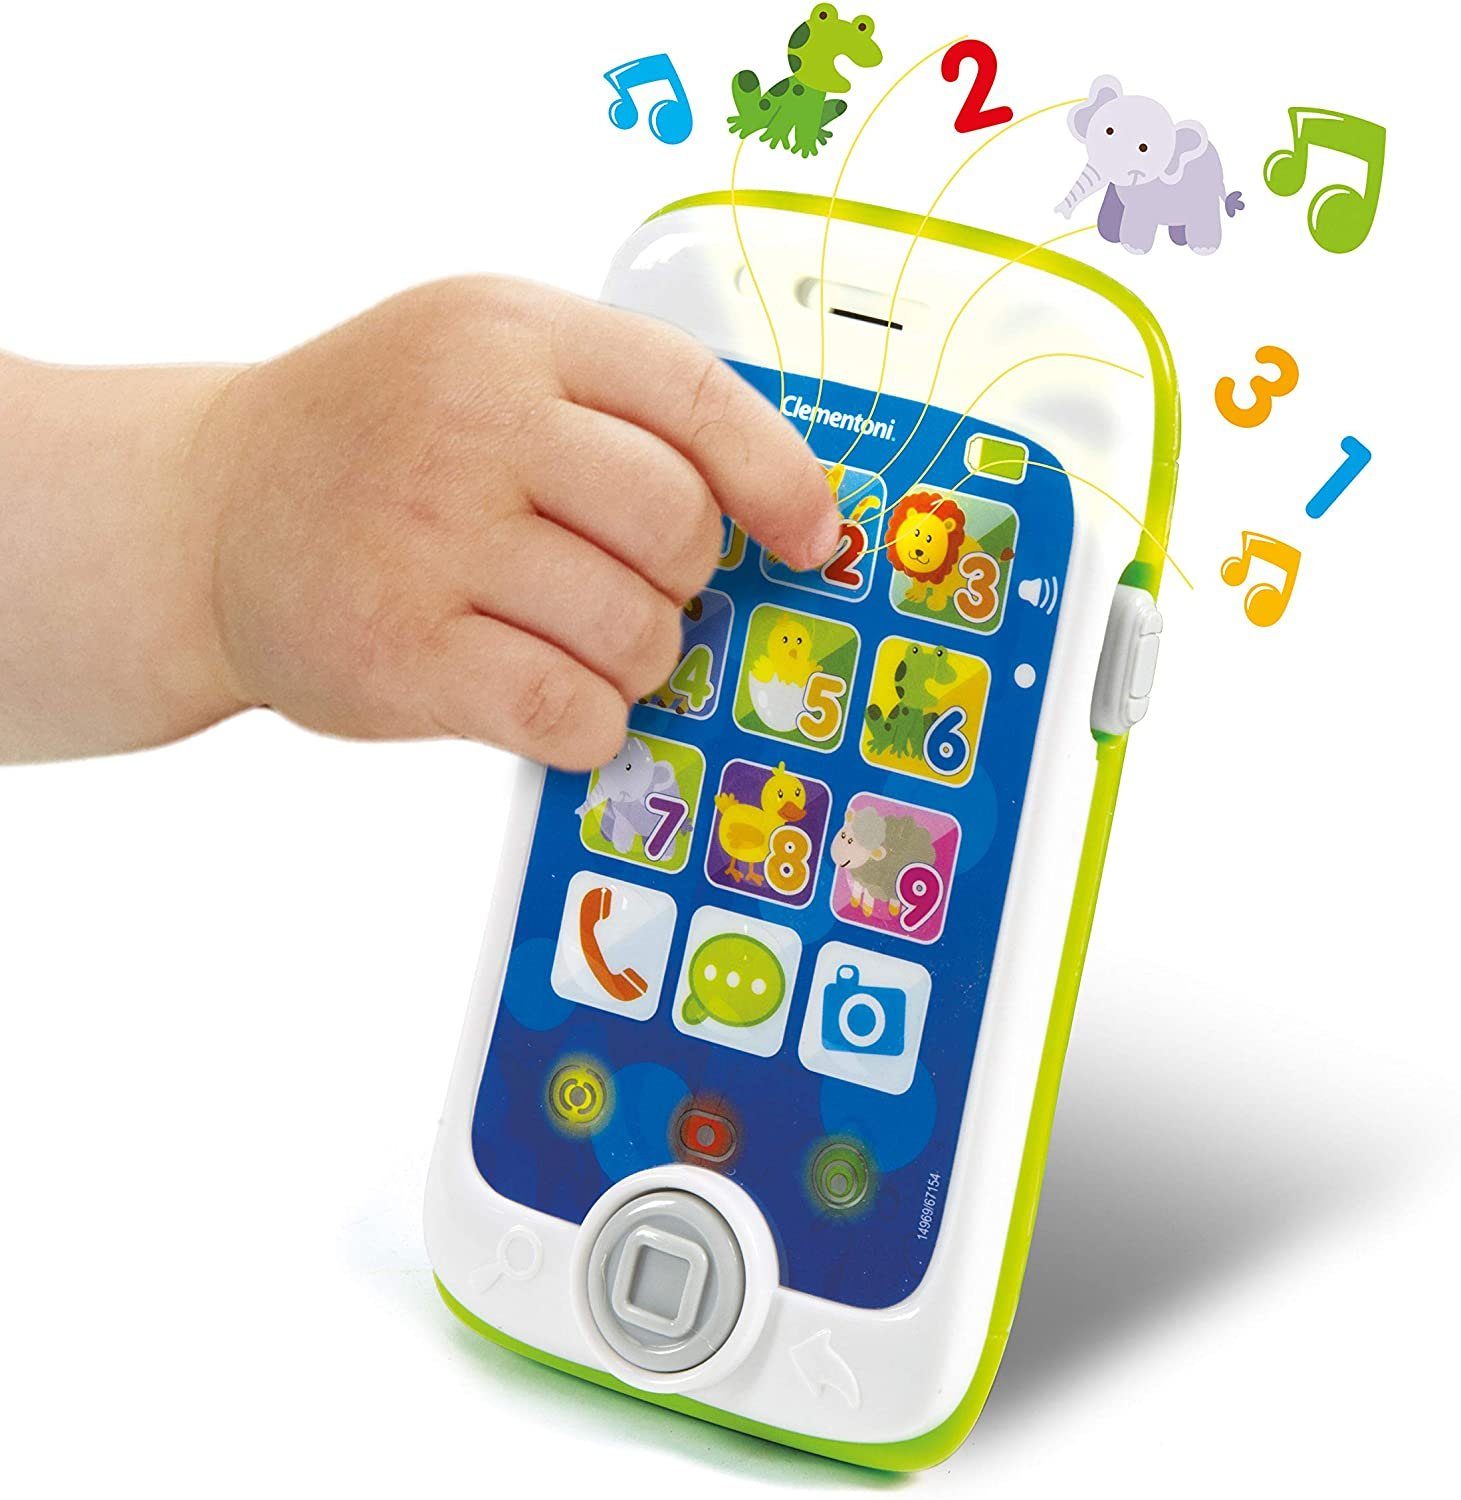 Clementoni® Lernspielzeug Smartphone baby Fun Clementoni